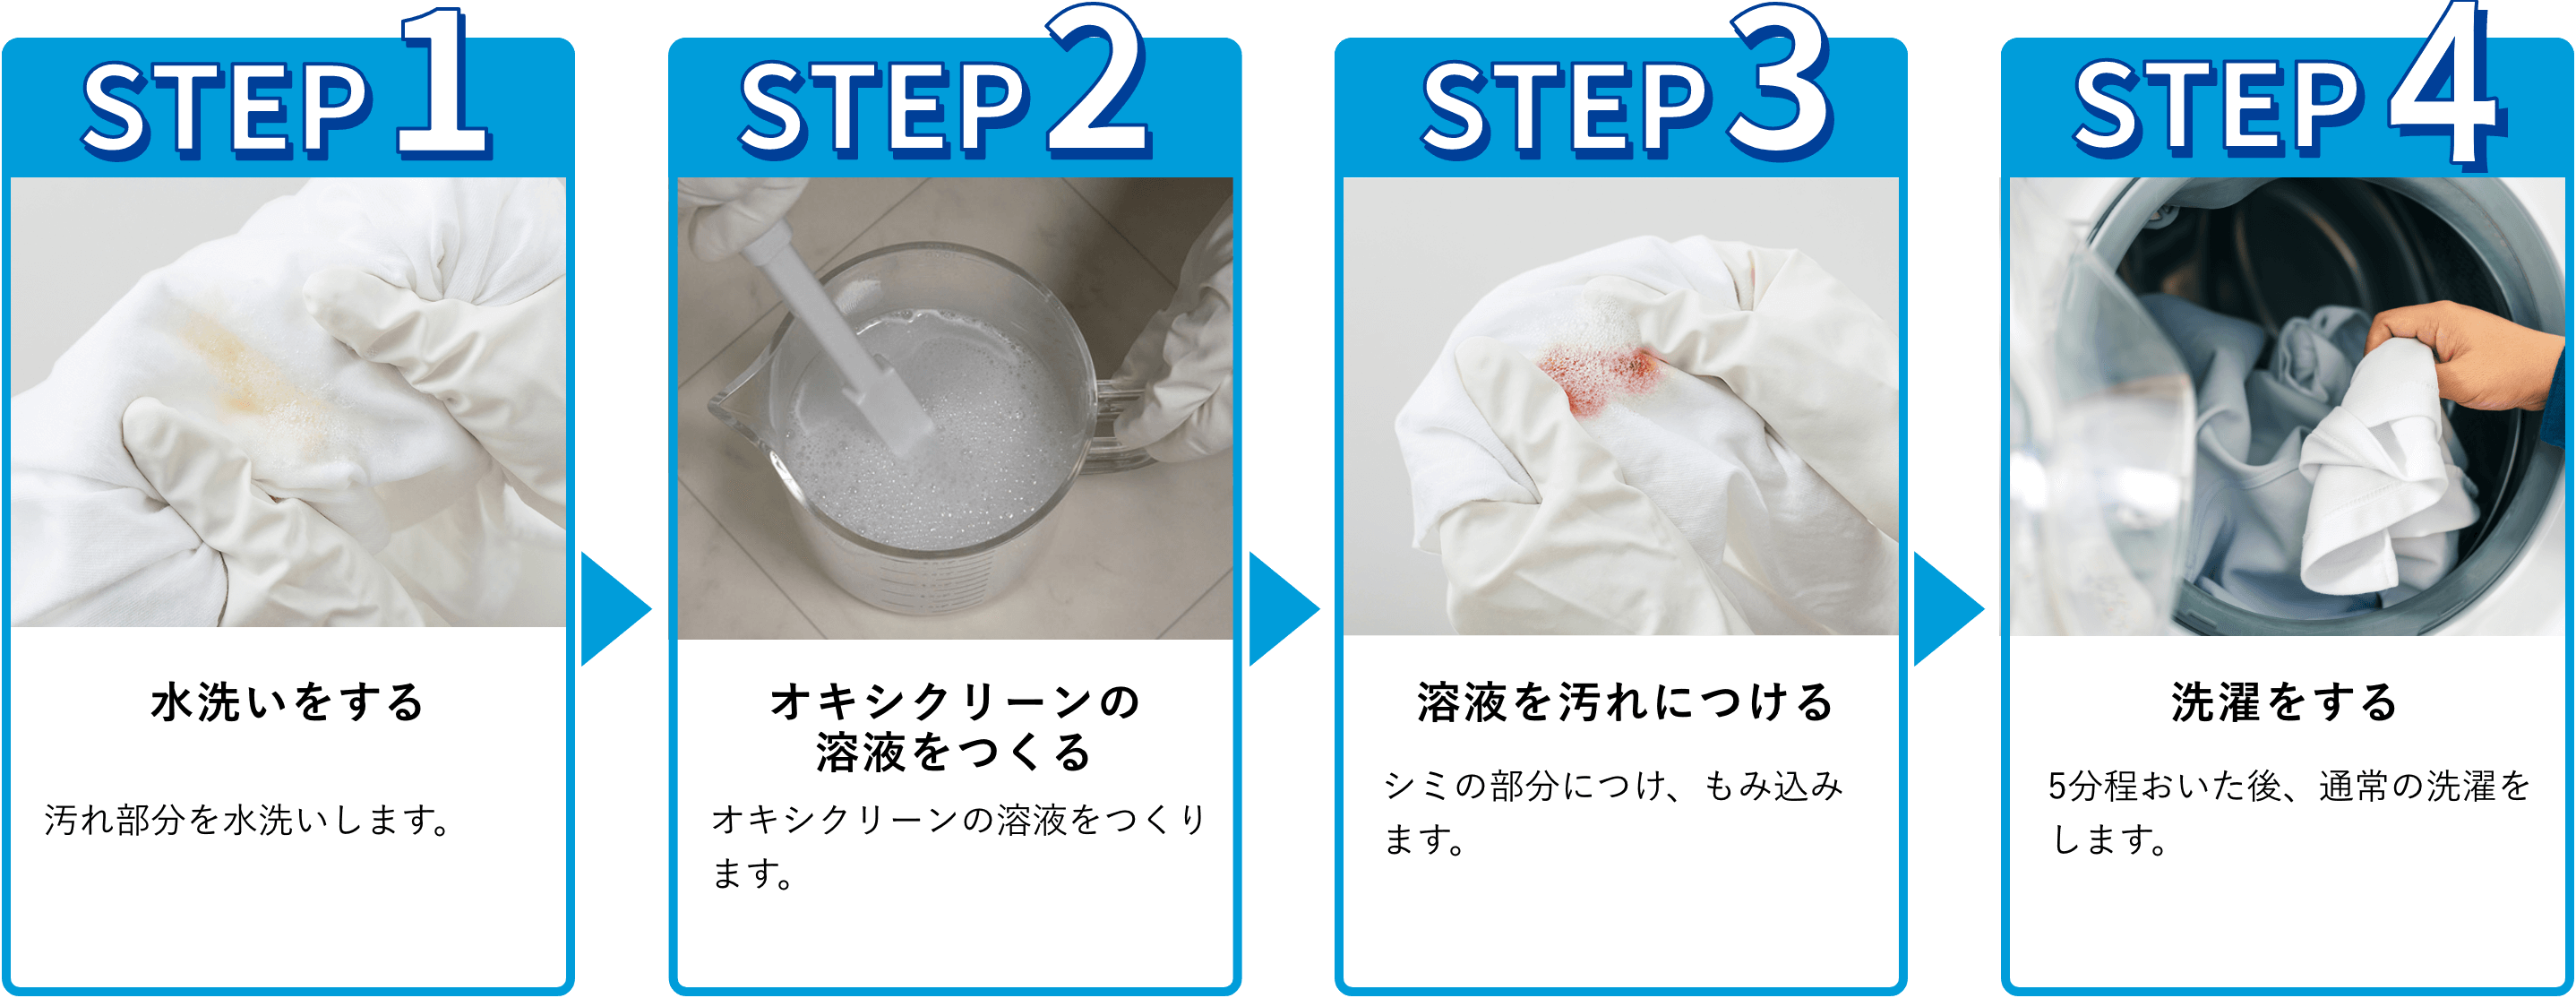 使用手順：1.水洗いをする汚れ部分を水洗いします。2.オキシクリーン溶液をつくる。オキシクリーン溶液をつくります。3.汚れにもみ込む。シミの部分にかけ、もみ込みます。4.洗濯をする。5分程おいた後、通常の洗濯をします。